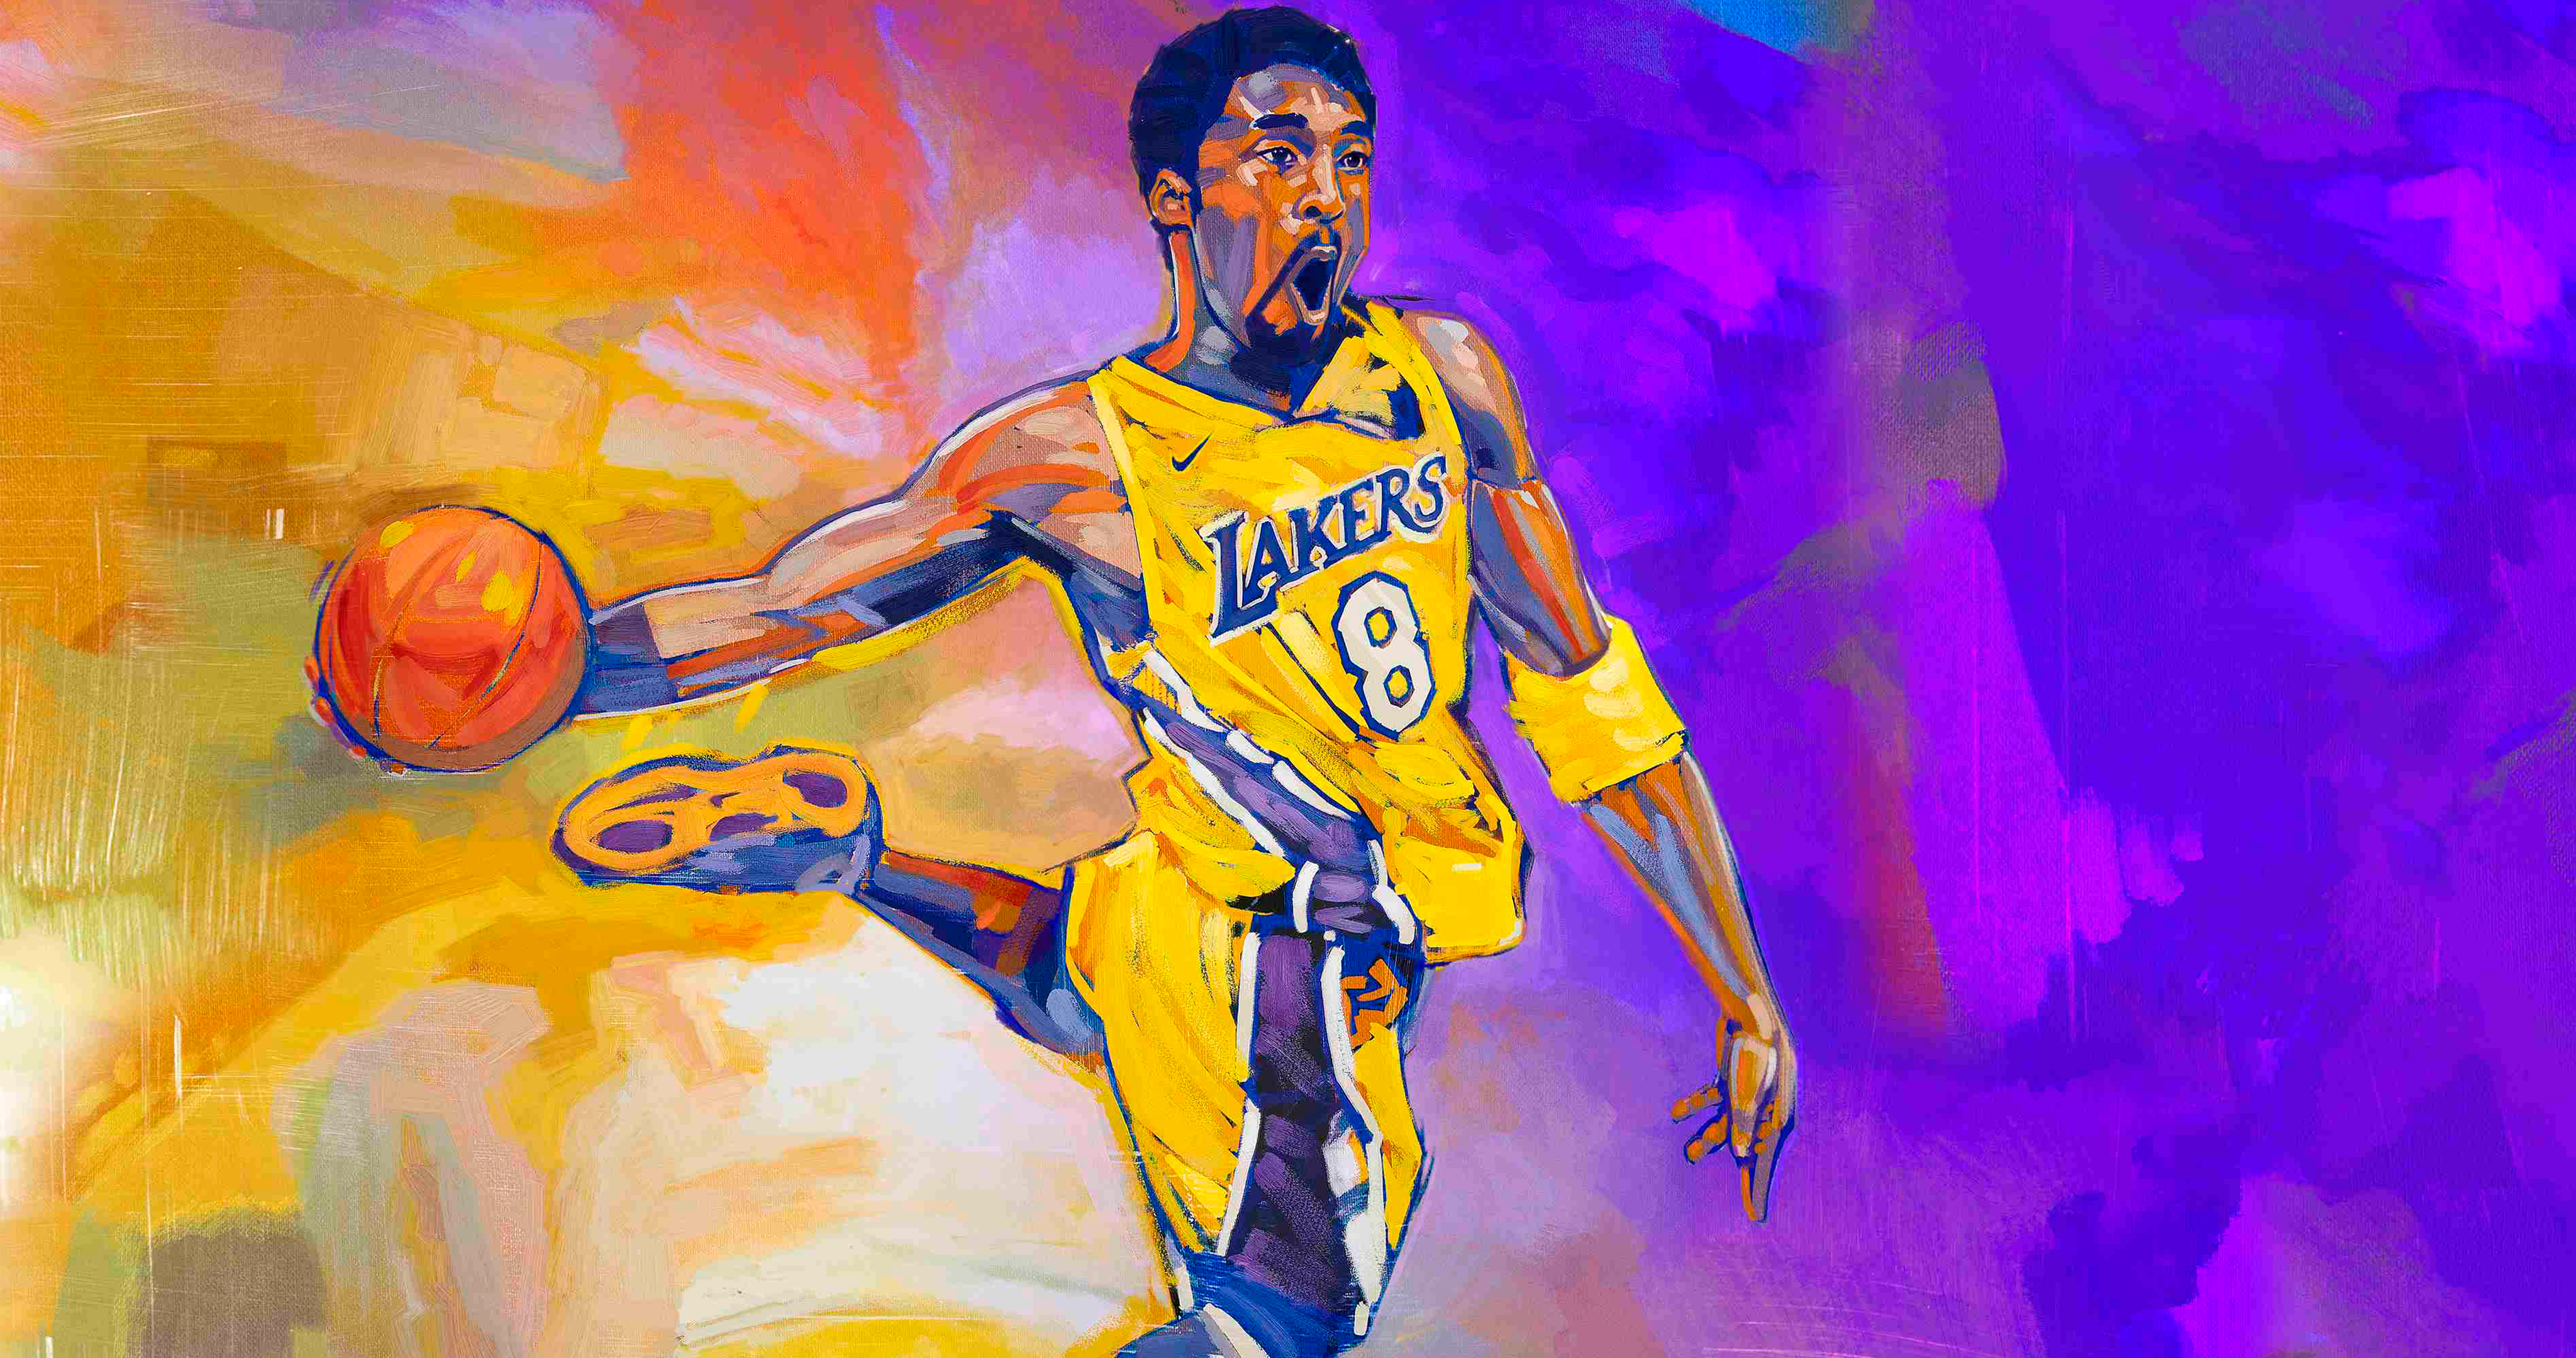 NBA 2K21 Kobe 8 Bryant Wallpaper in 4K